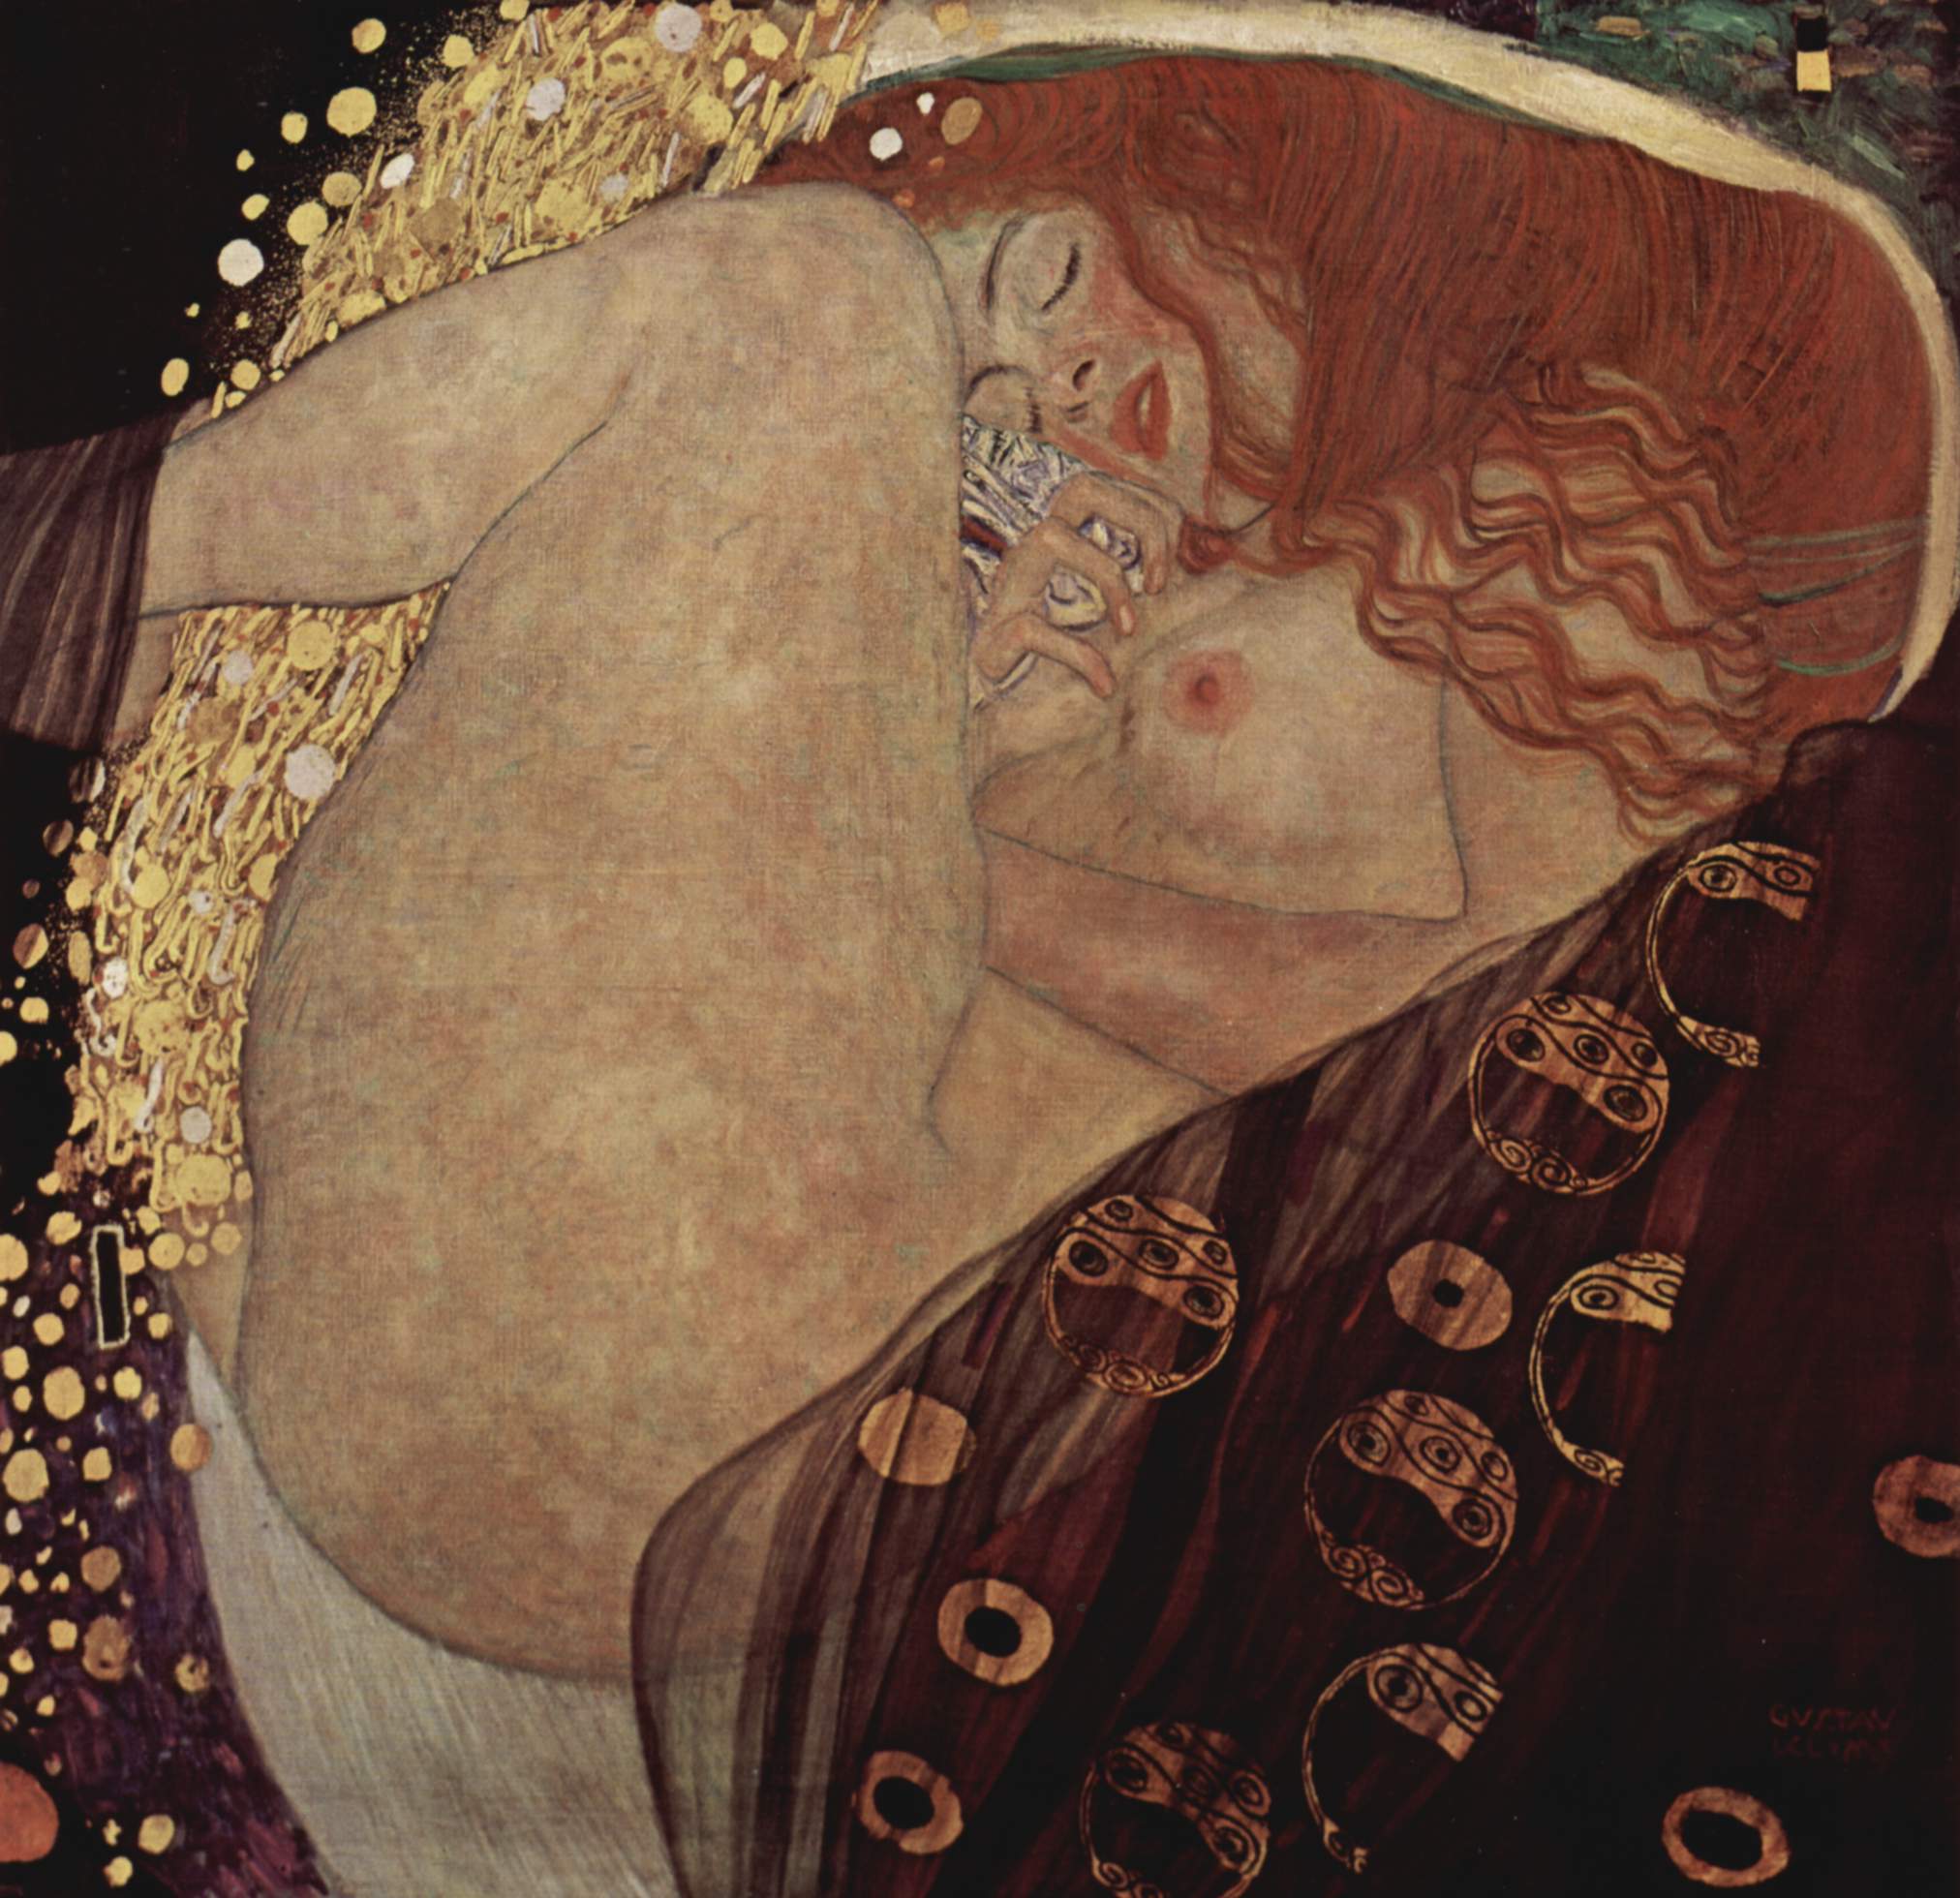 Δανάη by Γκούσταφ Κλιμτ - 1908 - 77 cm x 83 cm 